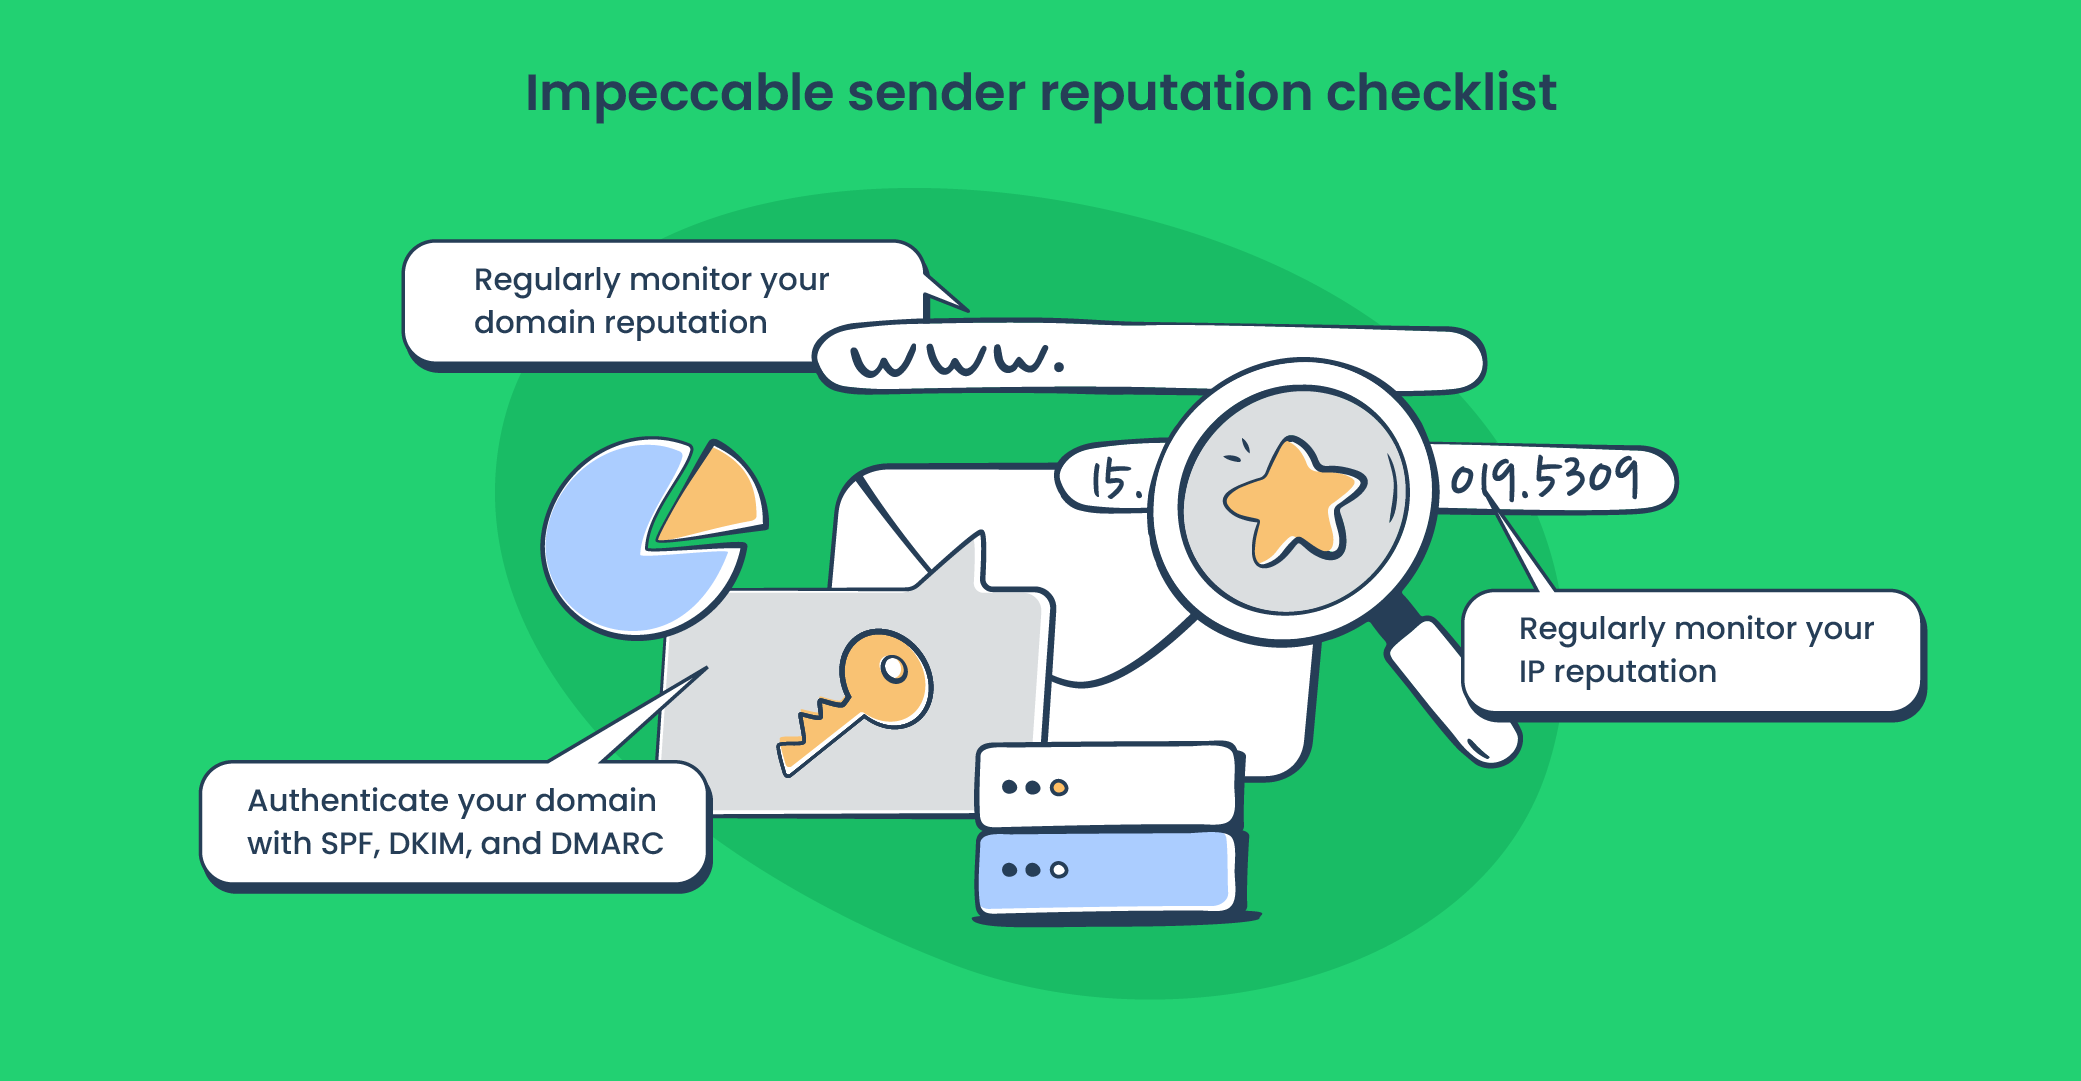 Impeccable sender reputation checklist 